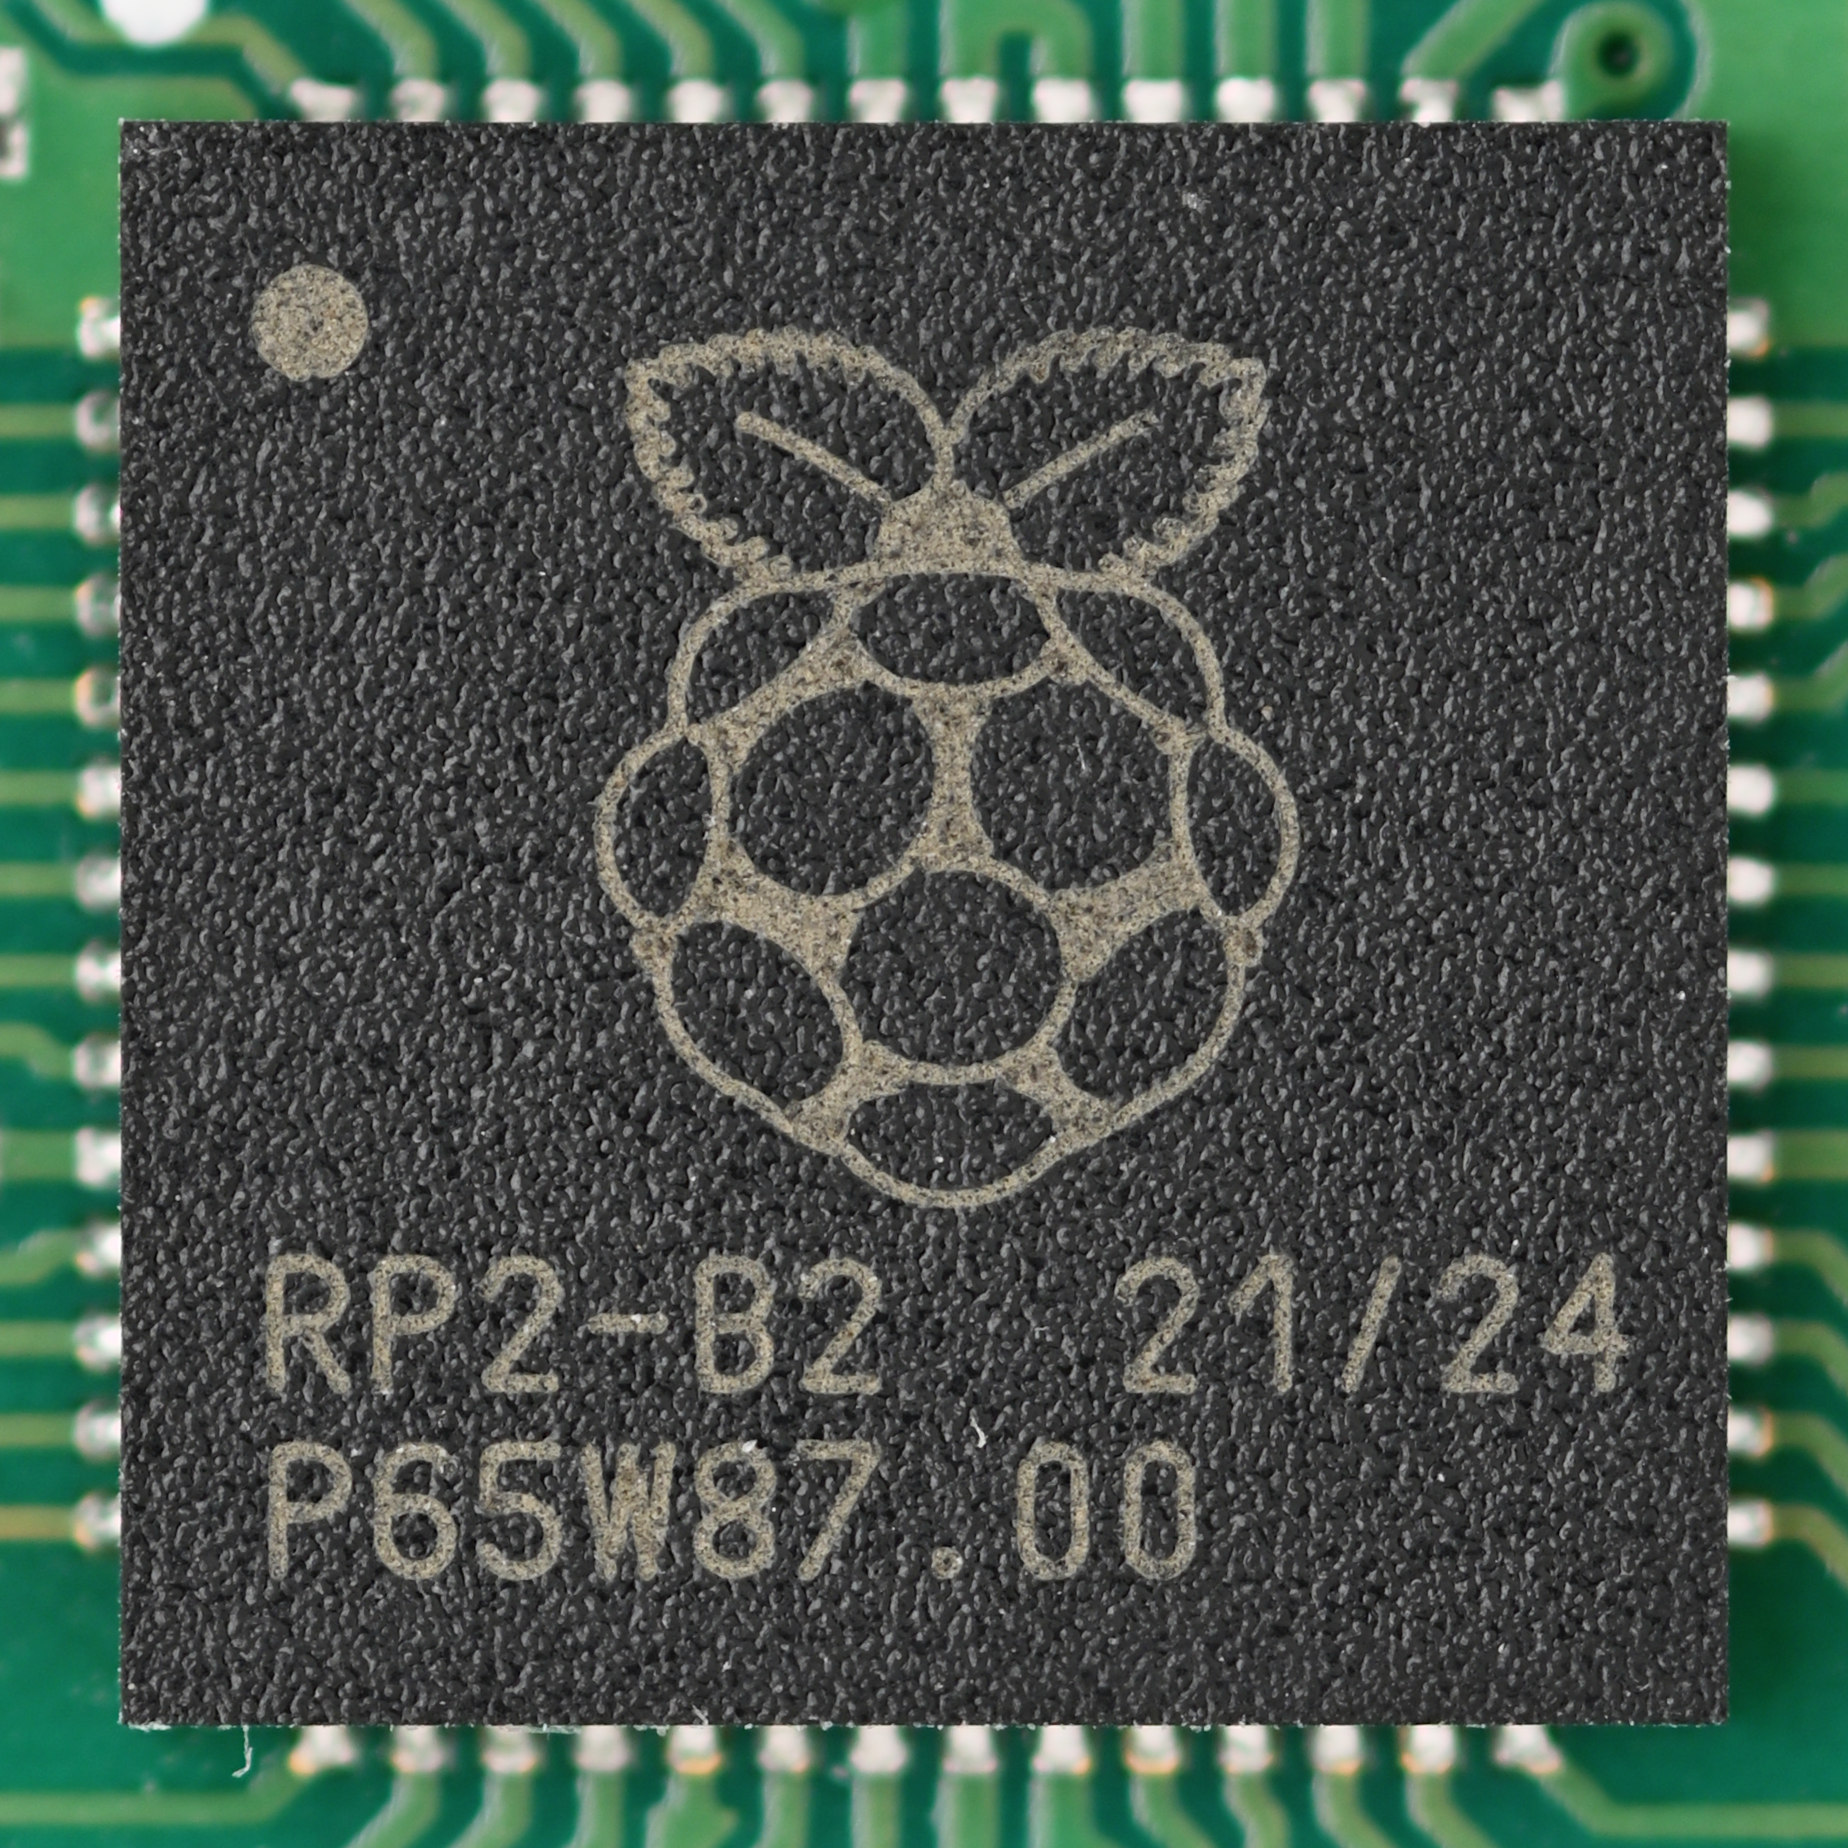 Waveshare a Pico-like MCU Board RP2040-Zero Based on Raspberry Pi MCU RP2040